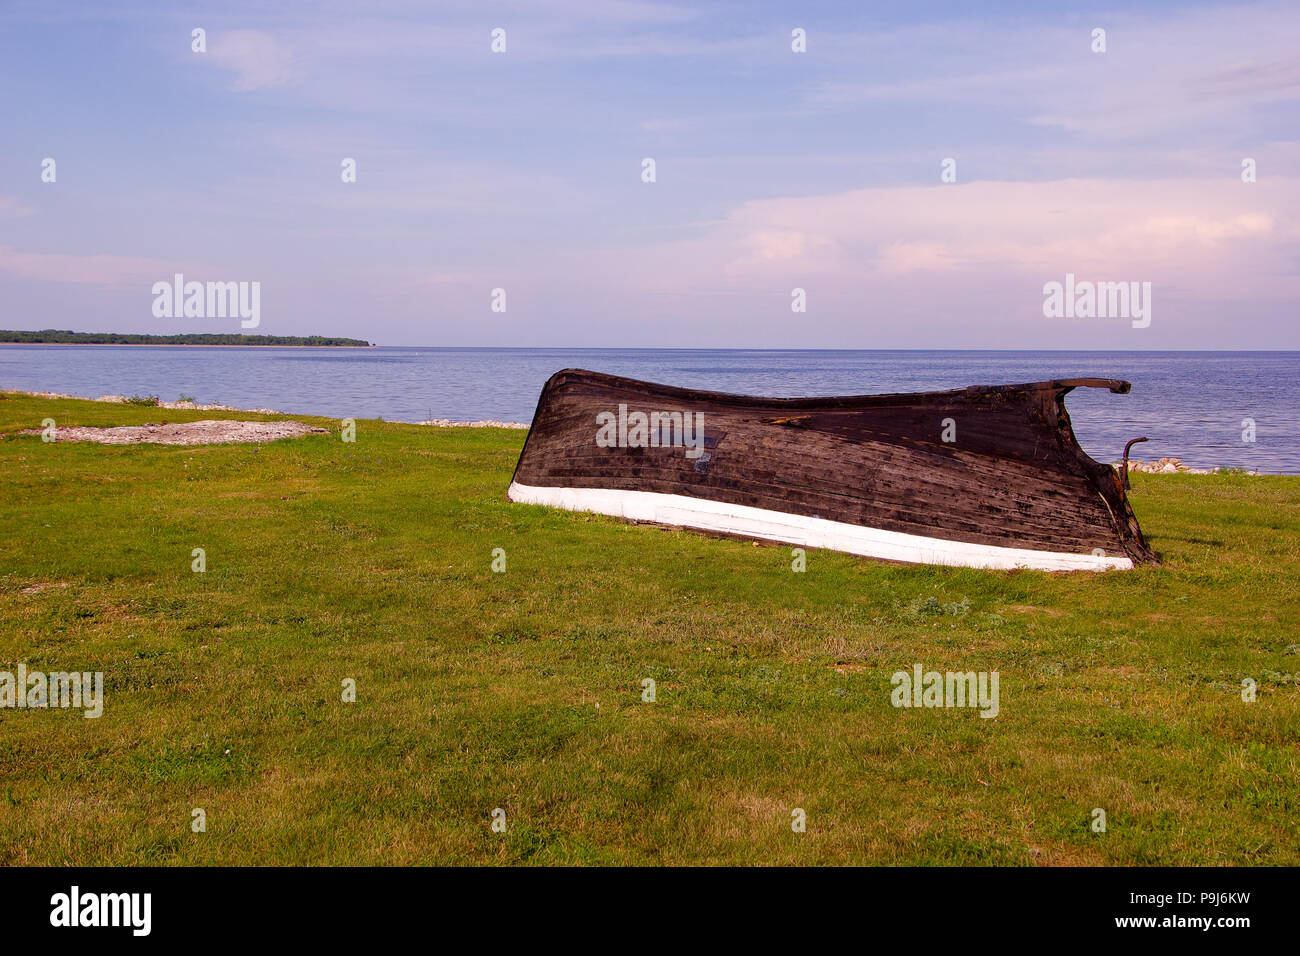 Tradizionale in legno con fondo in asfalto la pesca in barca sull'isola di Saaremaa in Estonia occidentale dove le persone hanno portato la vita semplice per secoli Foto Stock